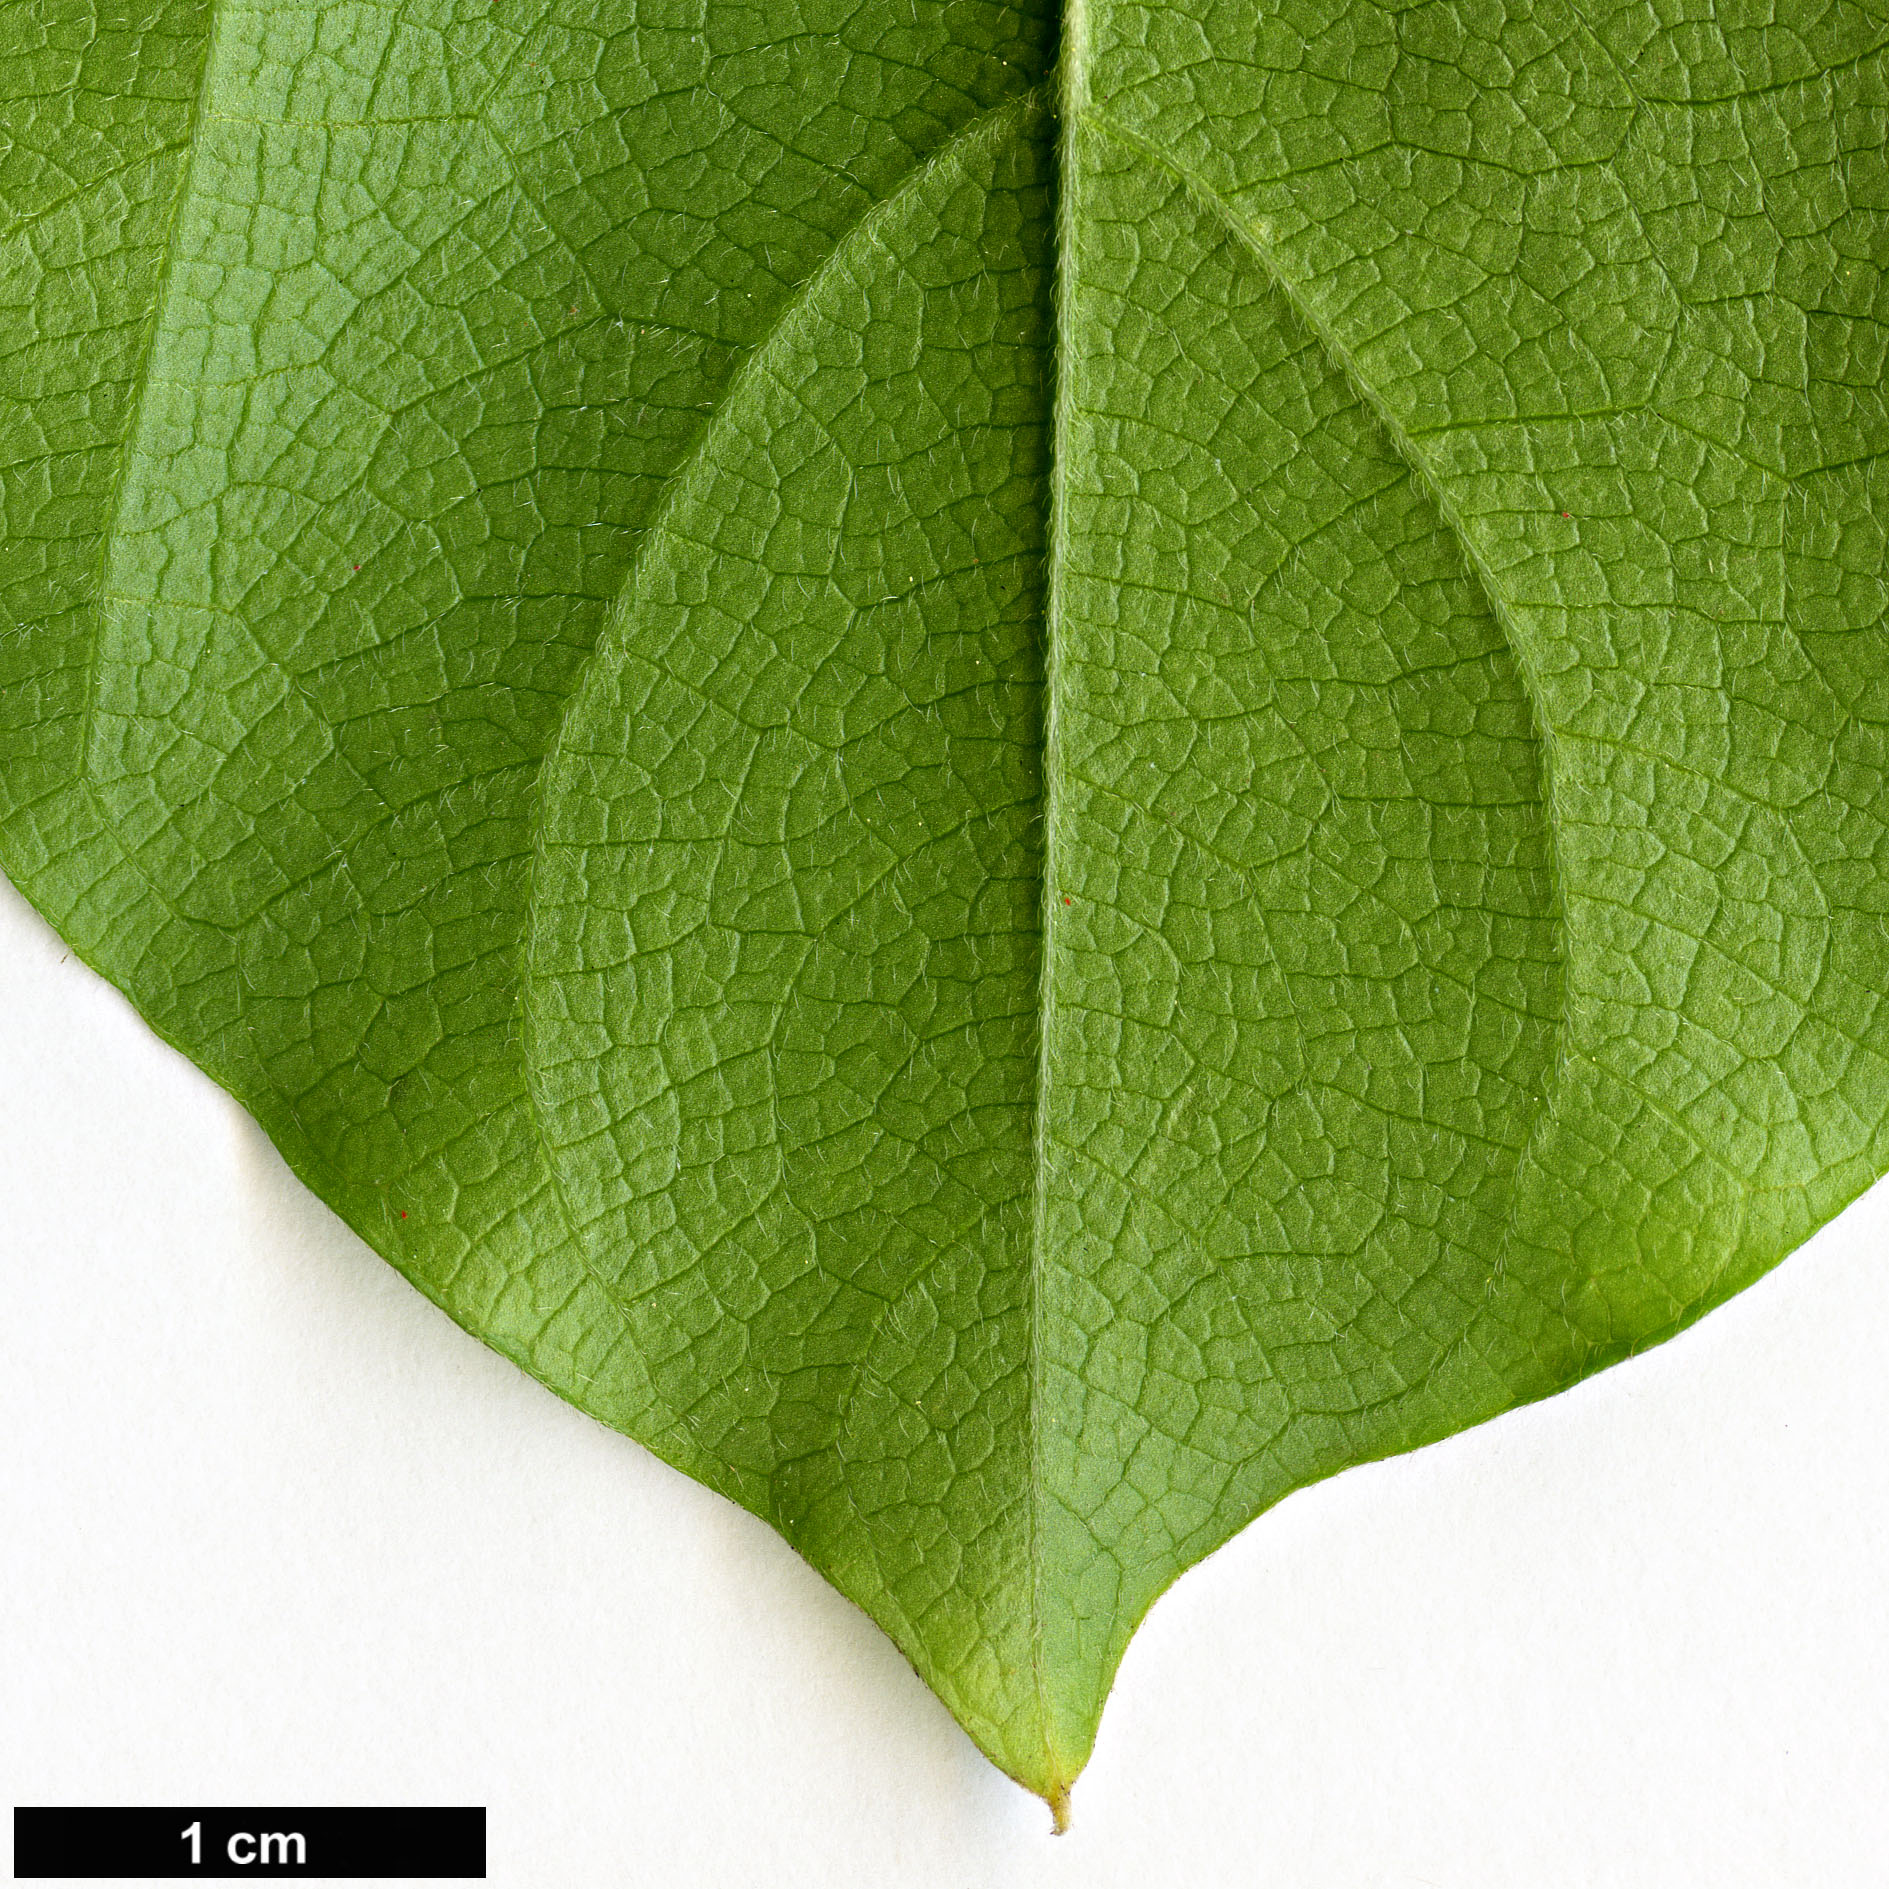 High resolution image: Family: Menispermaceae - Genus: Cocculus - Taxon: orbiculatus